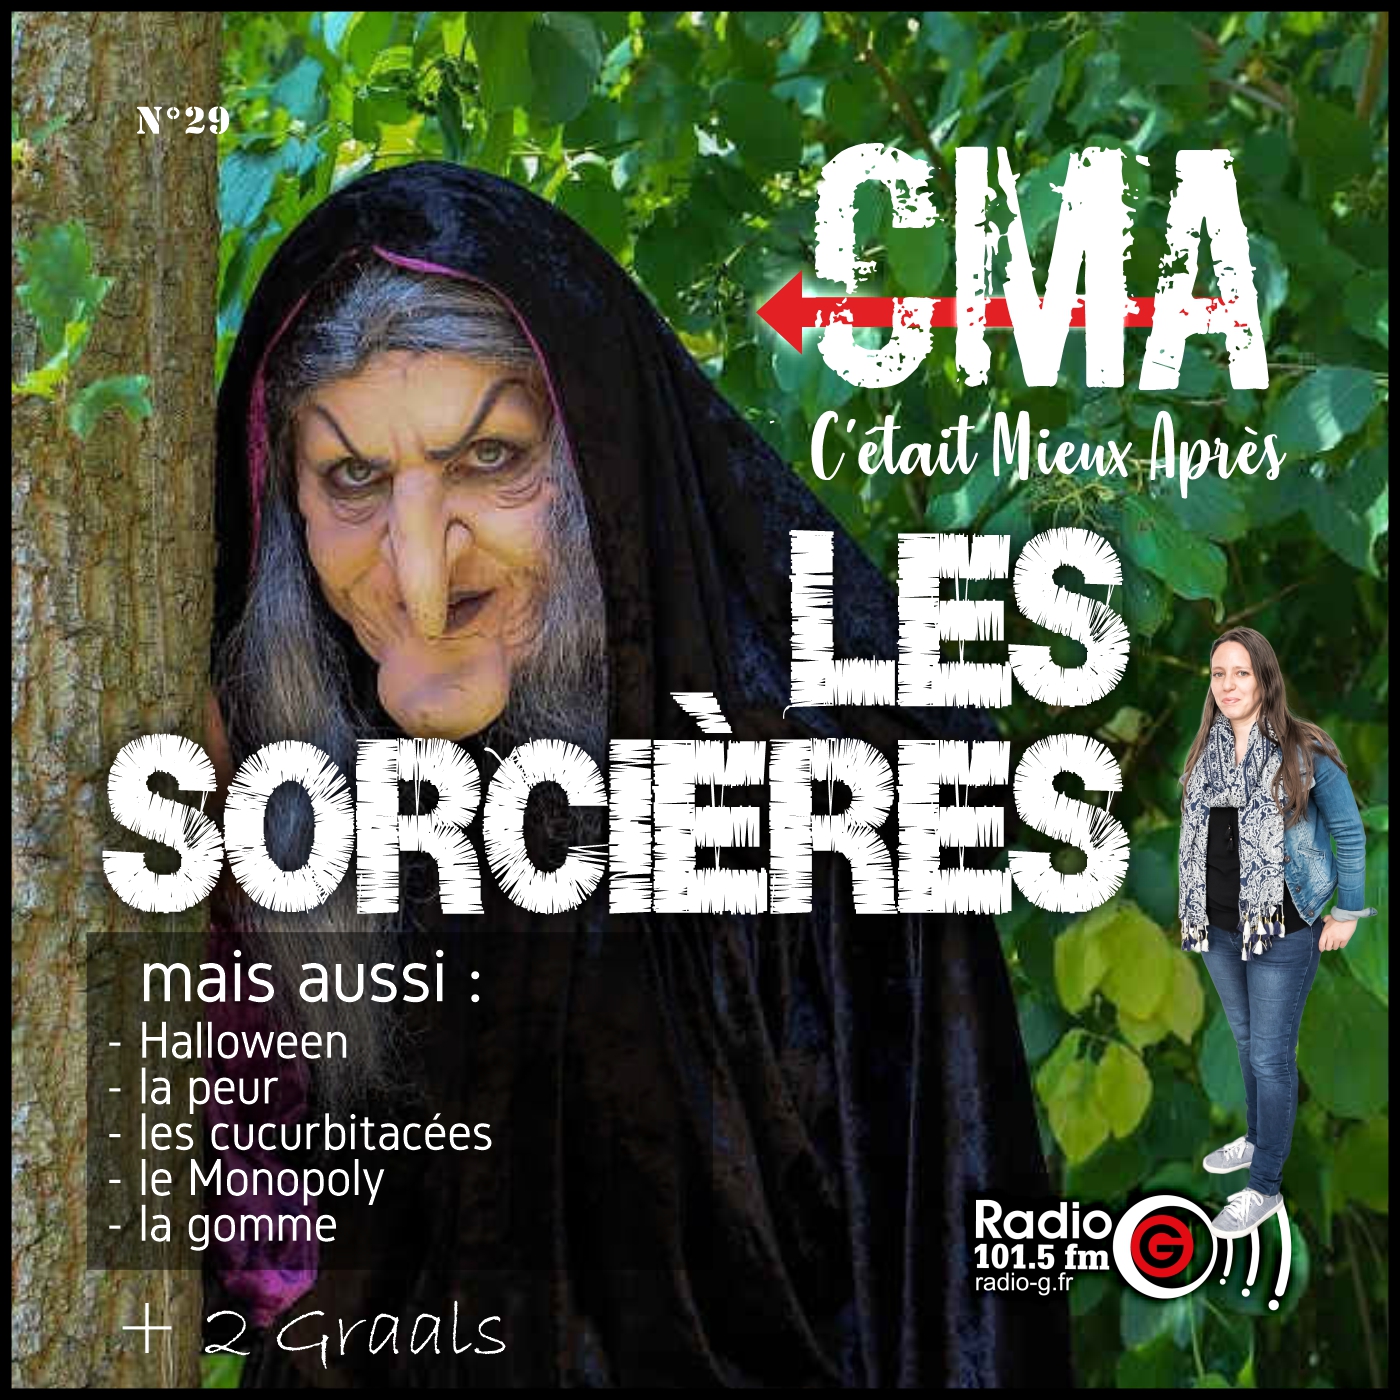 CMA du 1er novembre 2022 CMA, c'était mieux après, l'émission qui revient sur l'origine des choses - Radio G! Angers. CMA du 1er novembre 2022